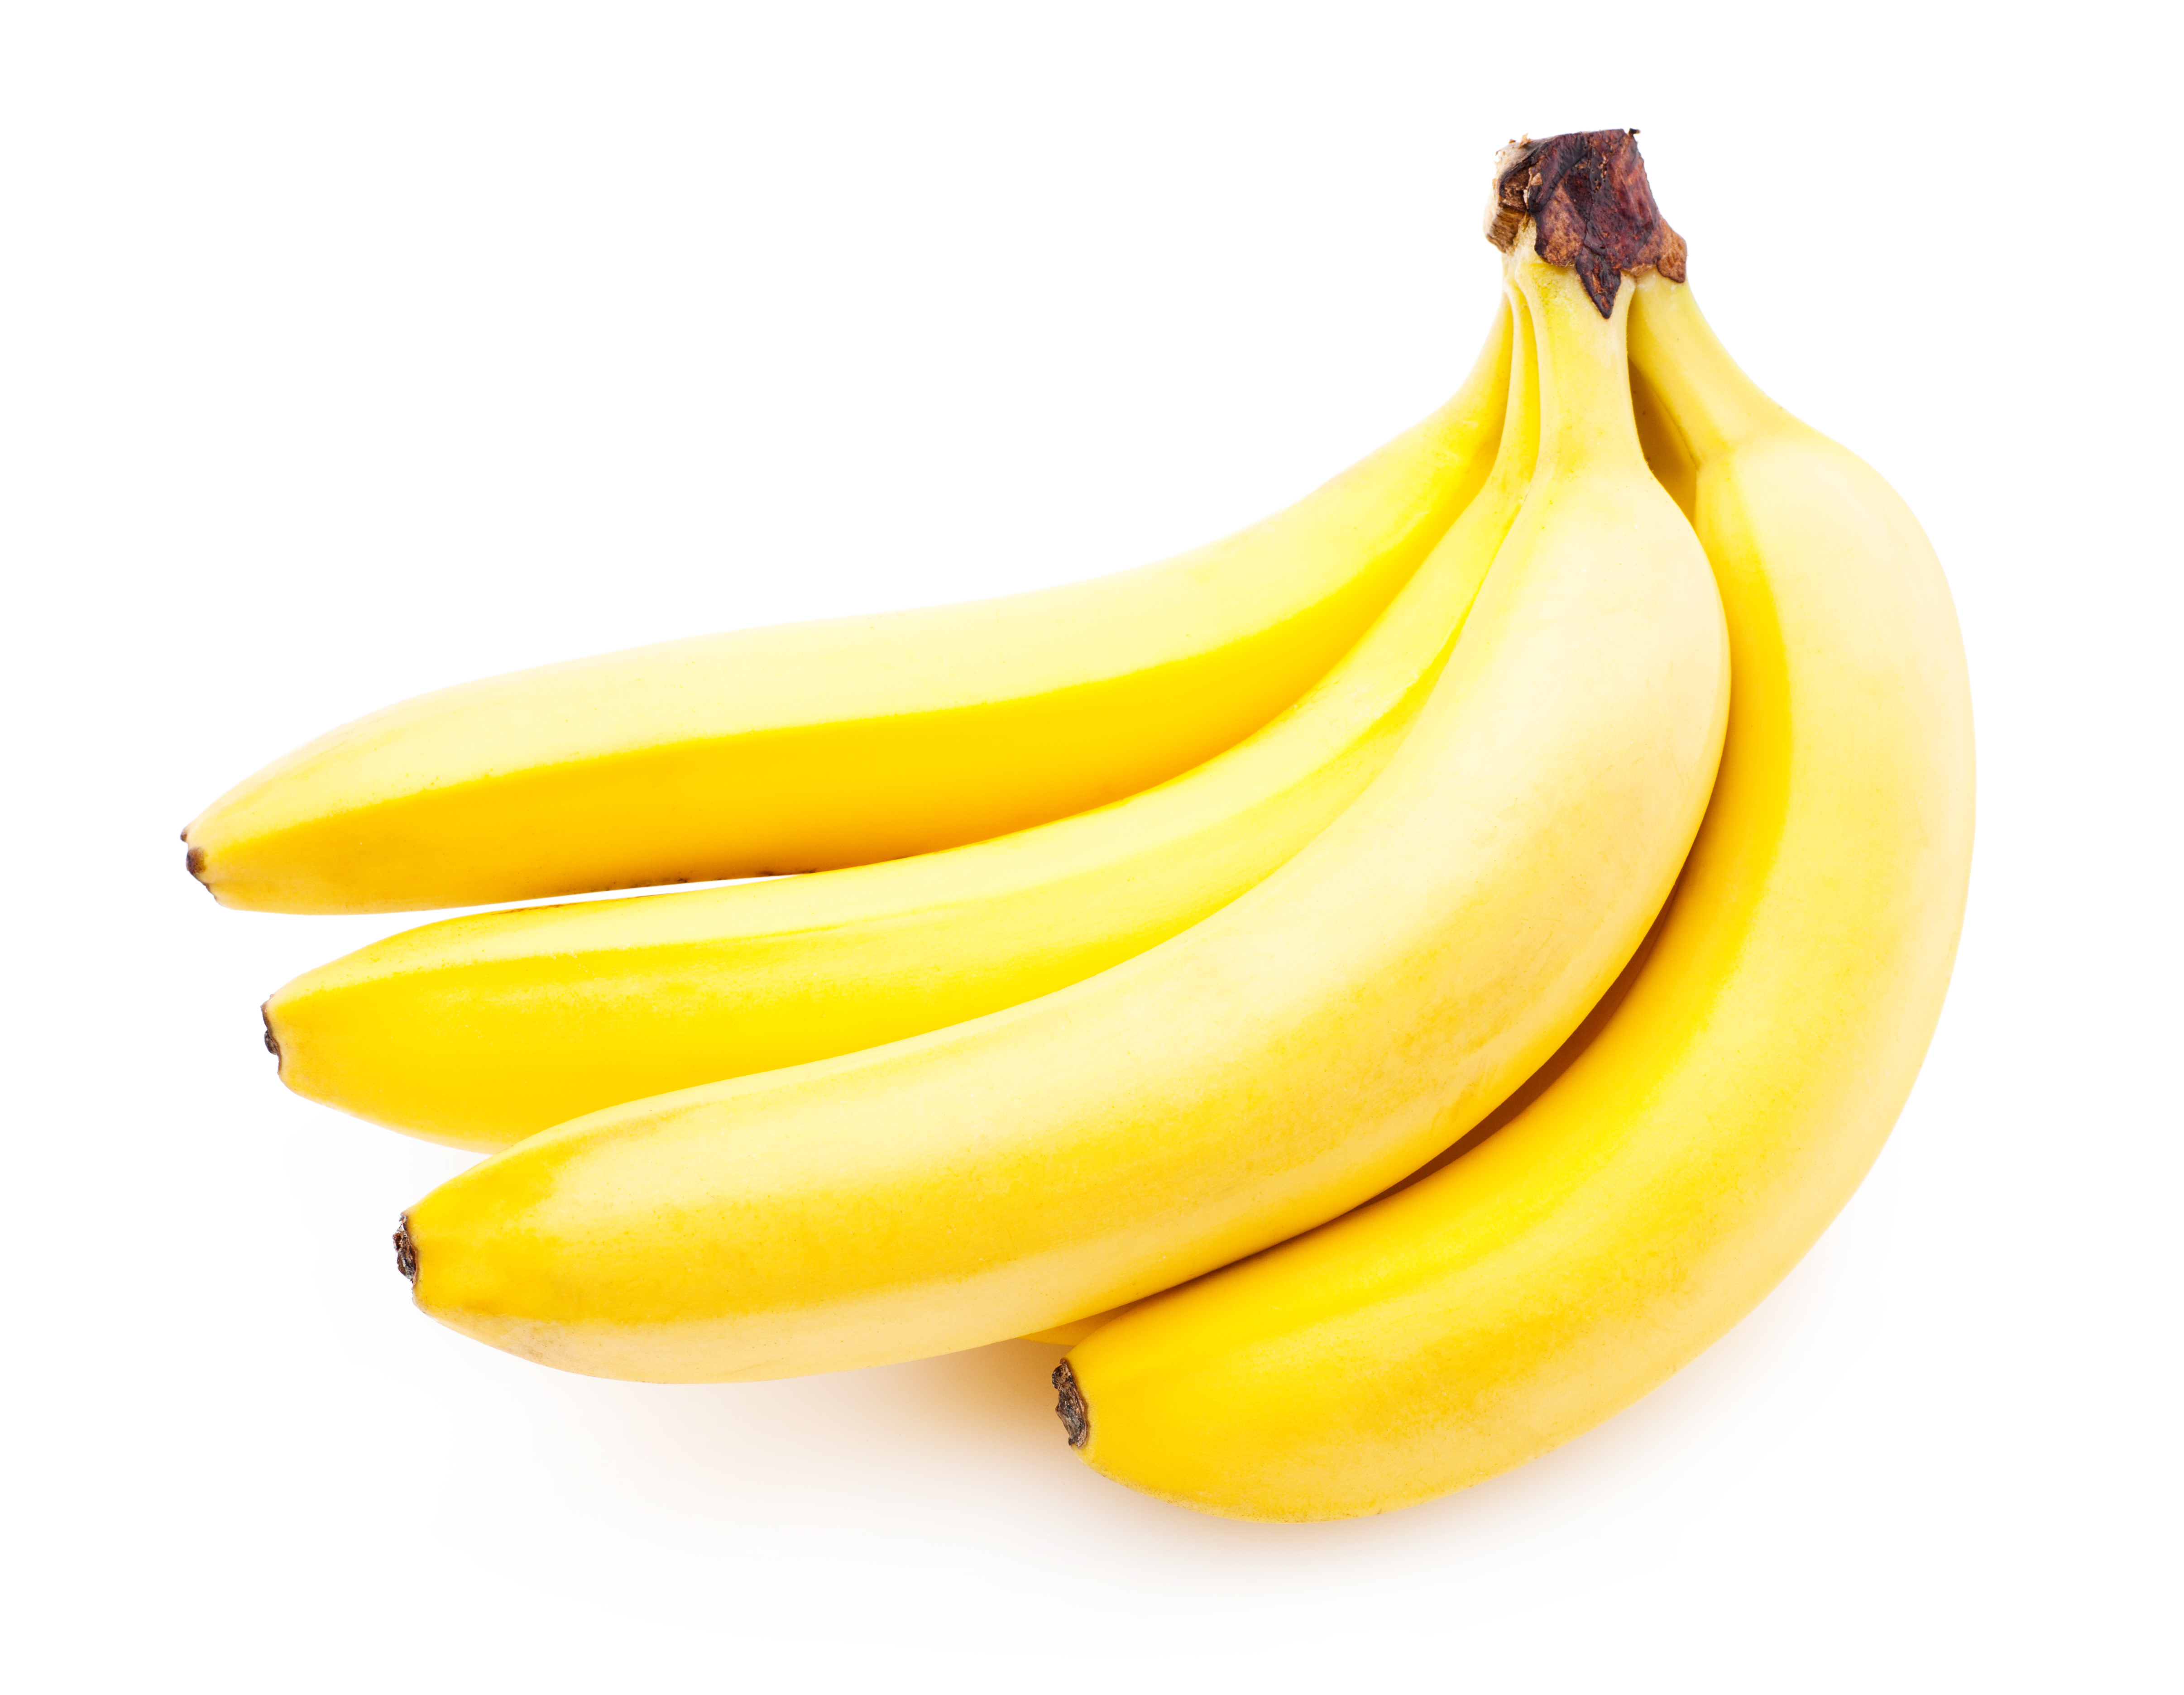 Yellow bananas photo